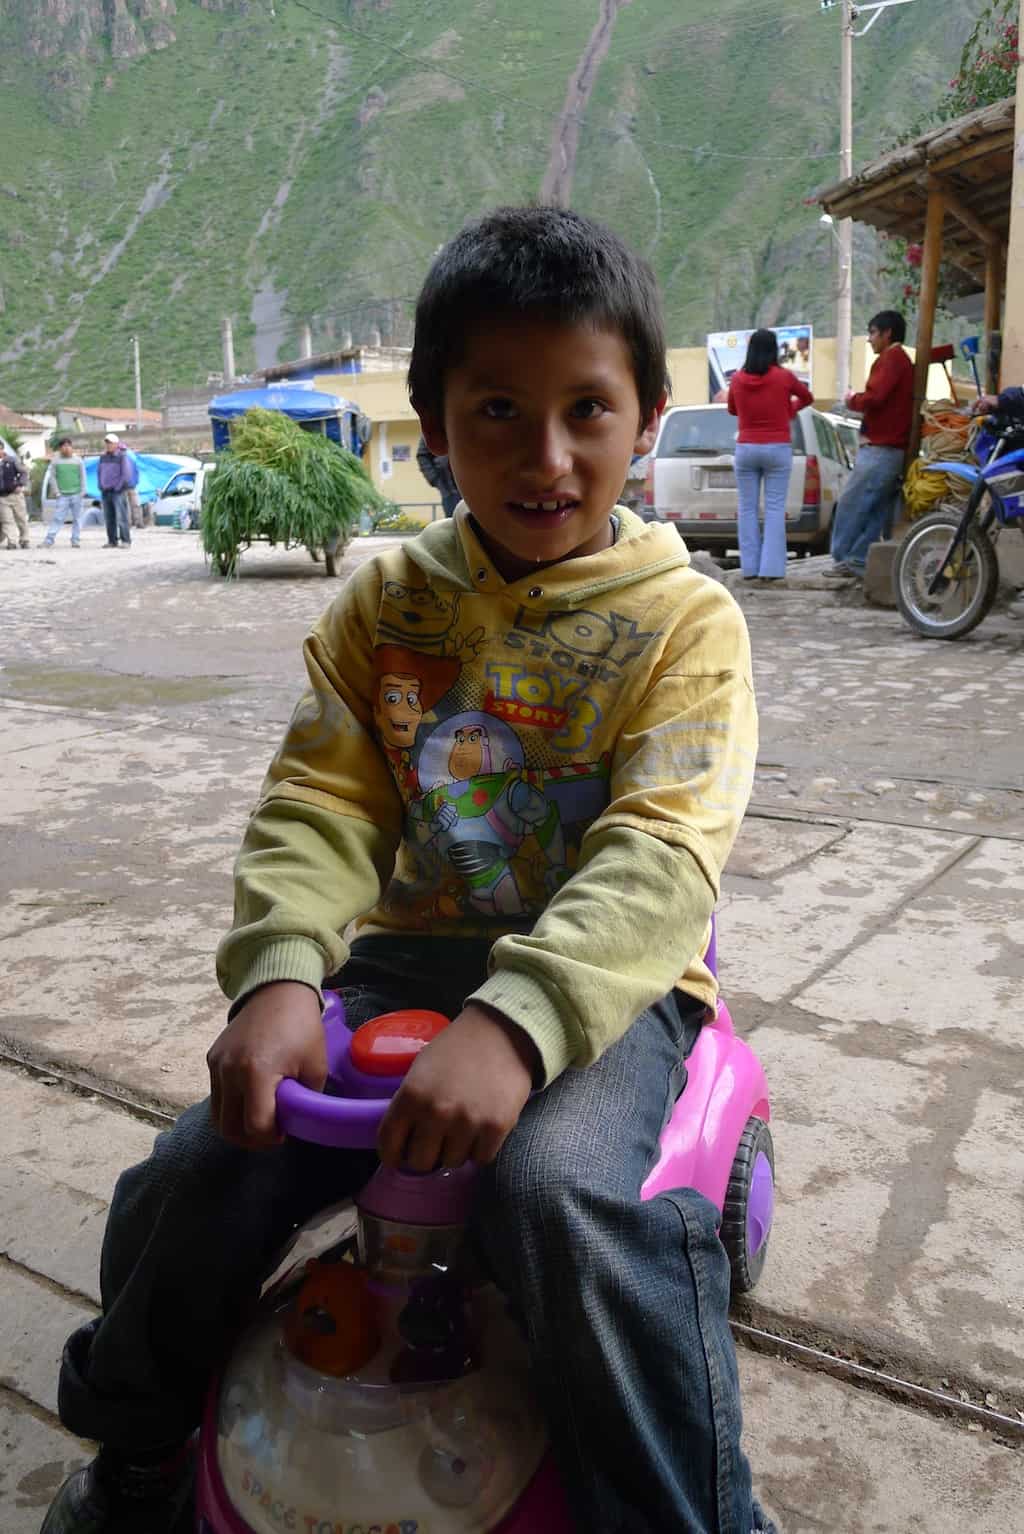 child in Peru